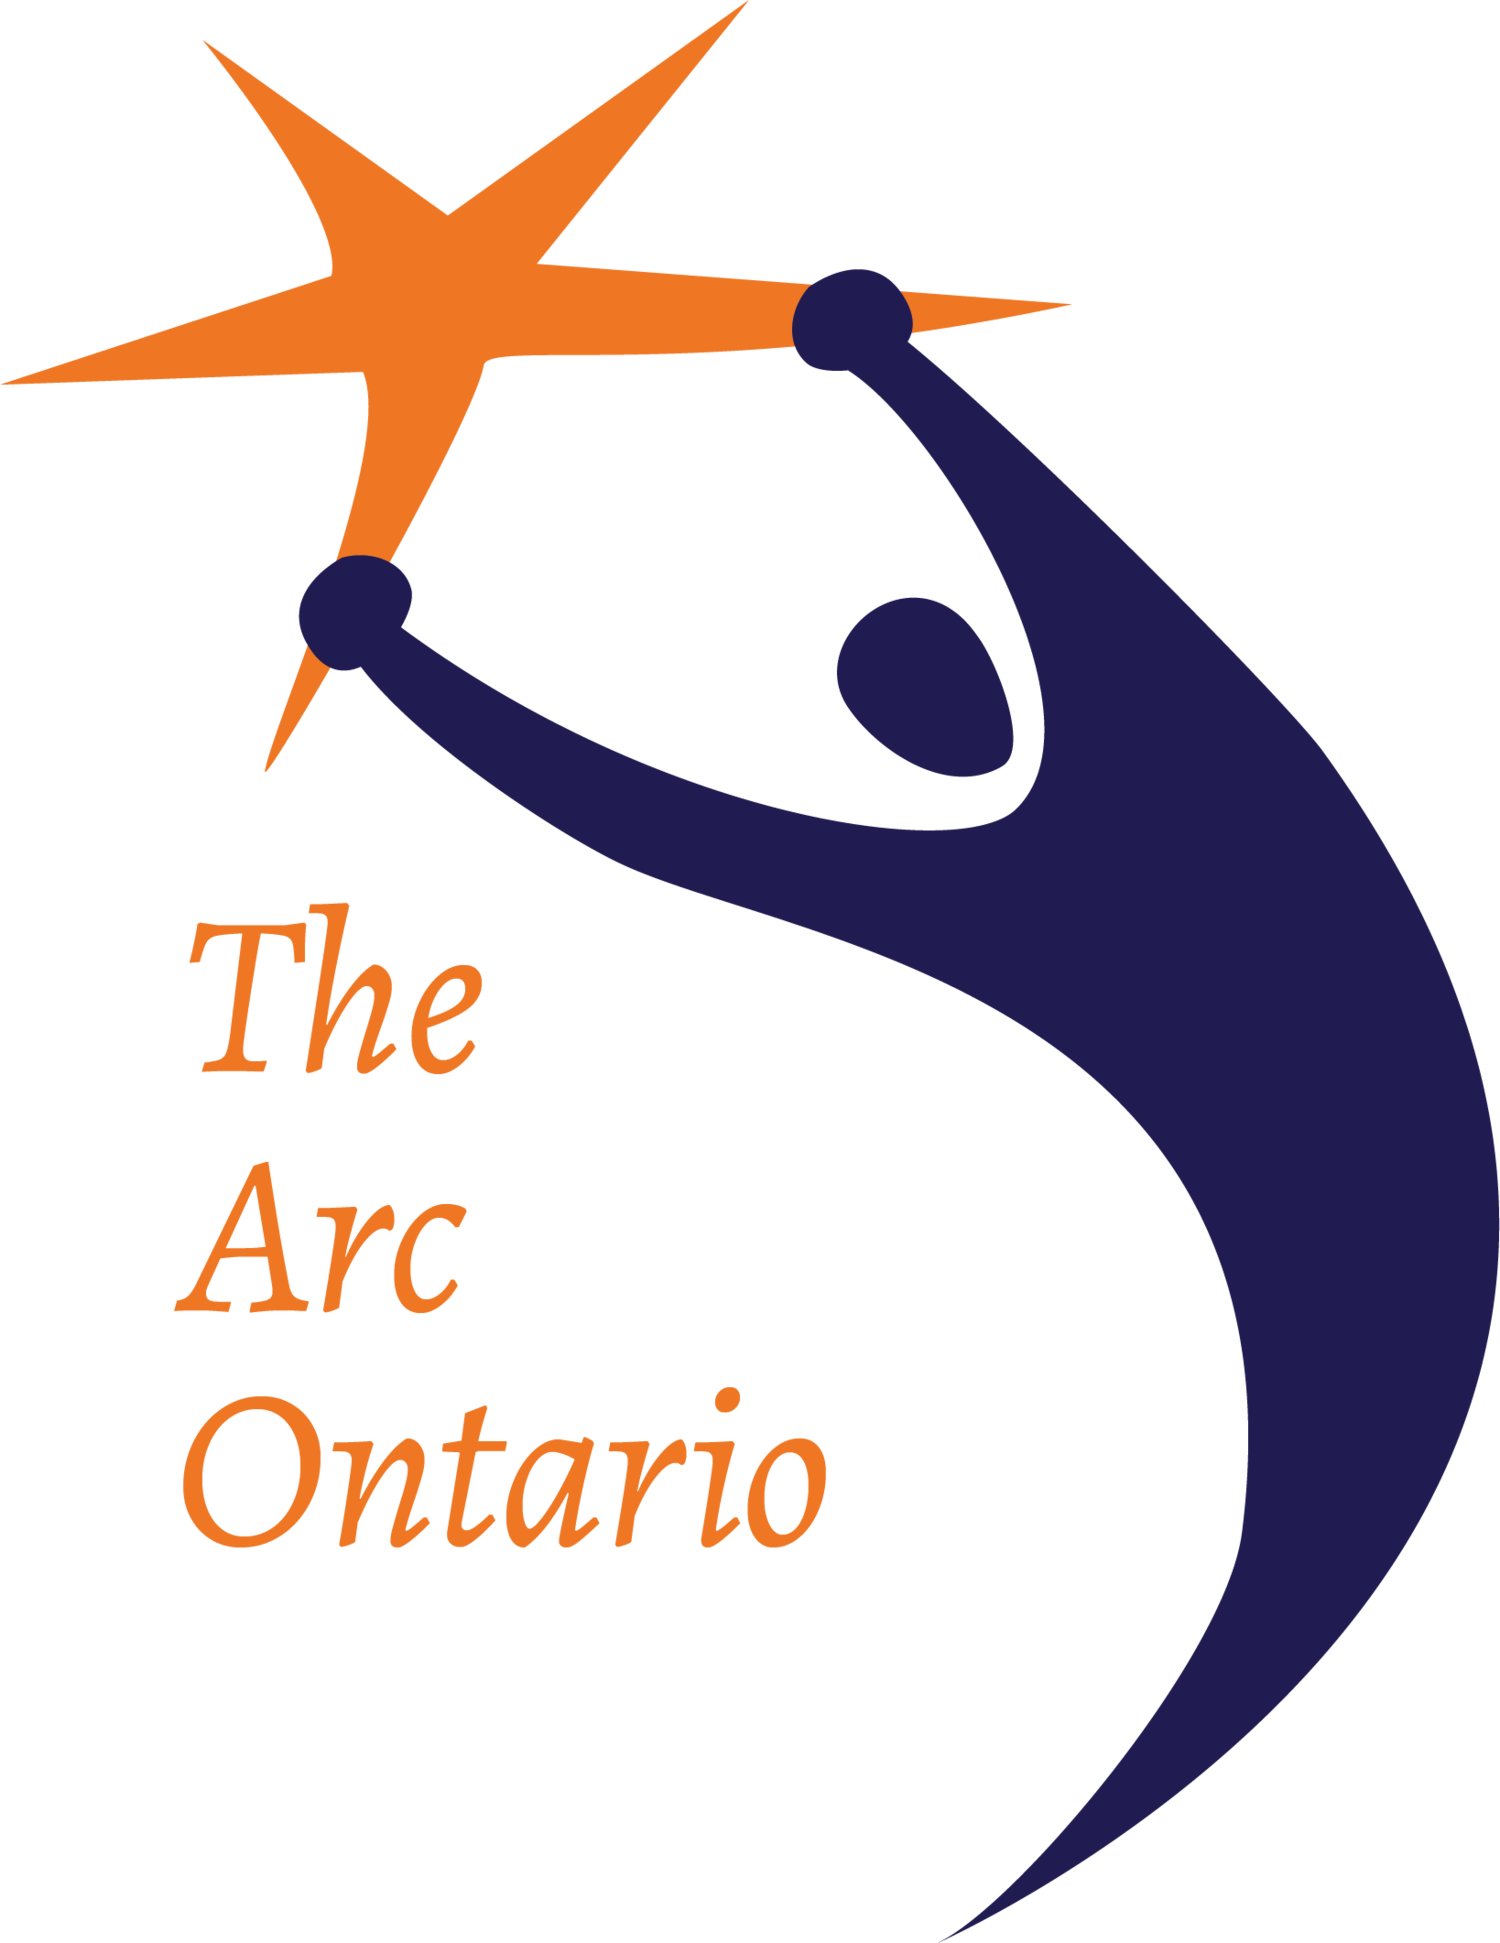 Contact — The Arc Ontario